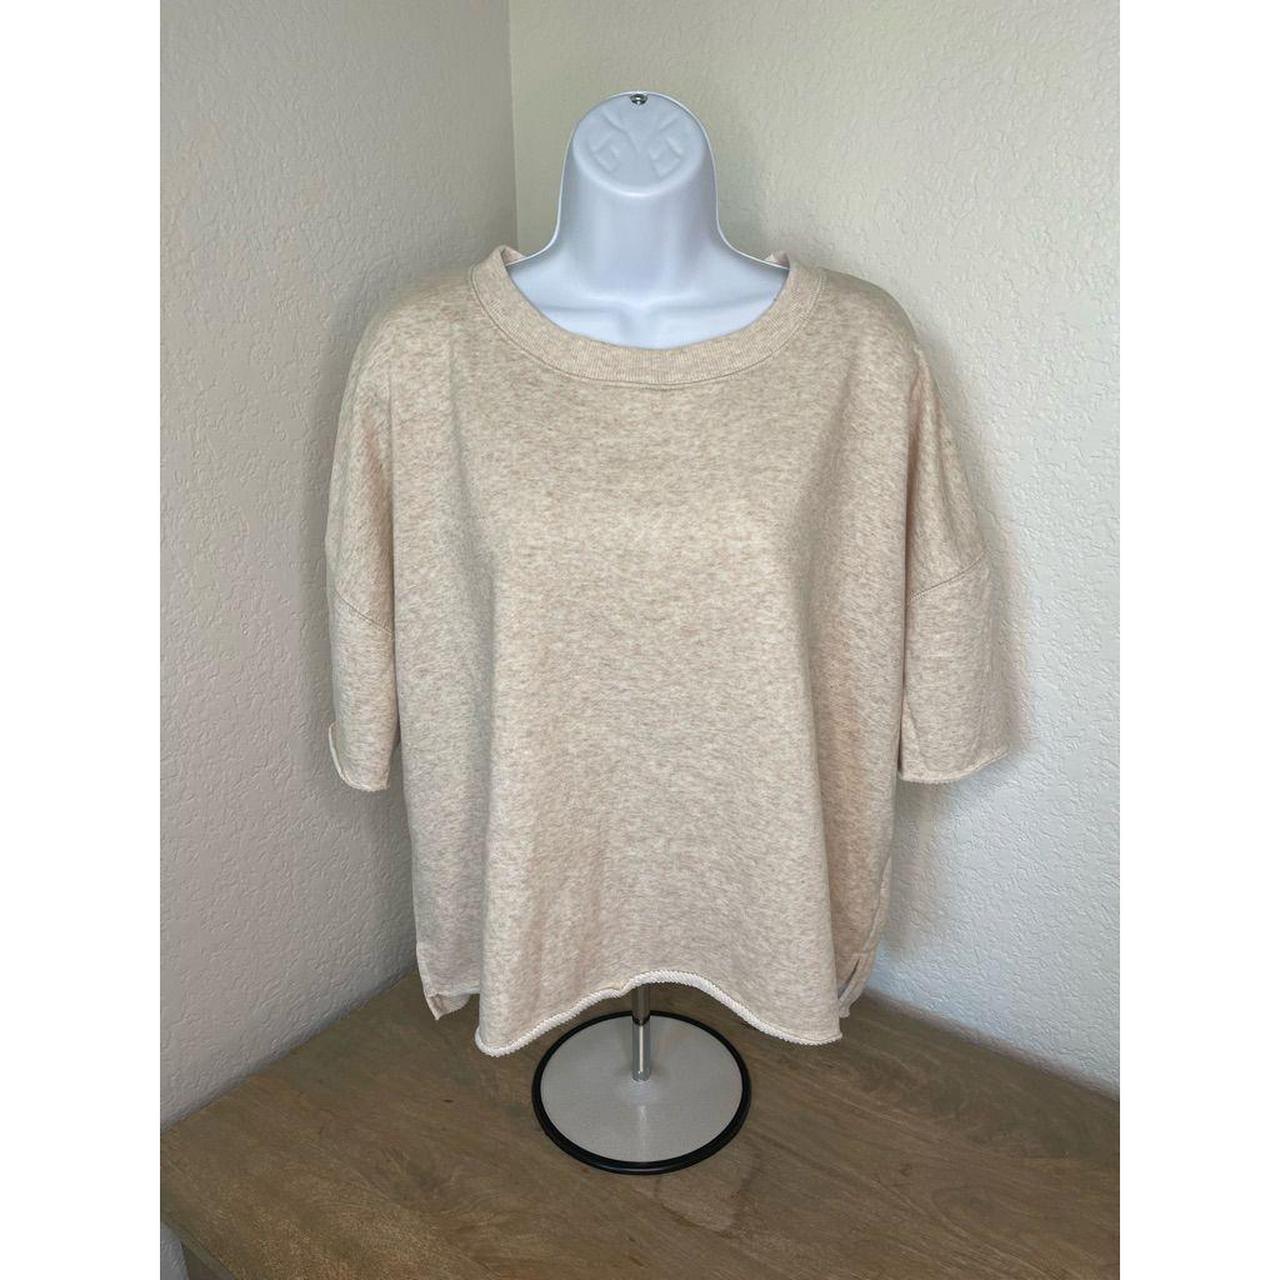 Product Image 1 - Cropped Short Sleeve Sweatshirt, Cream